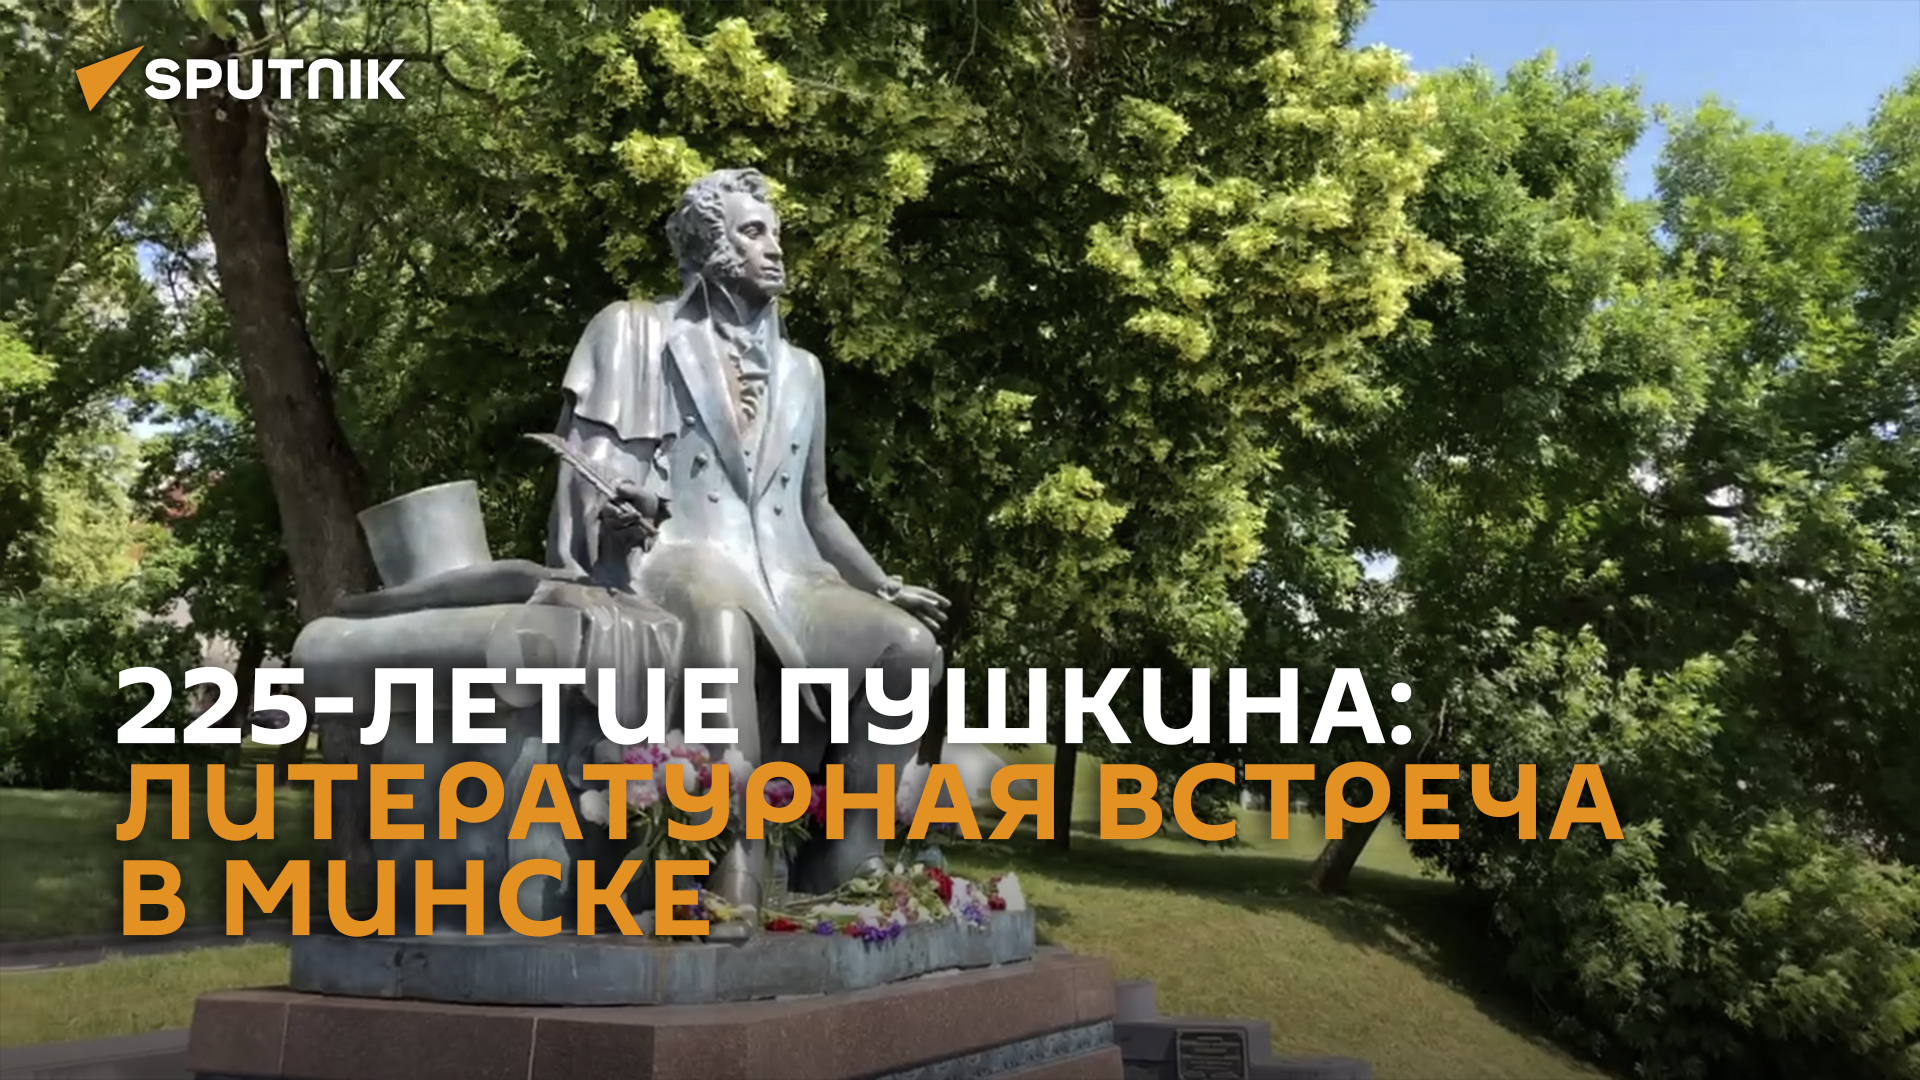 Я помню чудное мгновенье: стихи Пушкина прозвучали в центре Минска